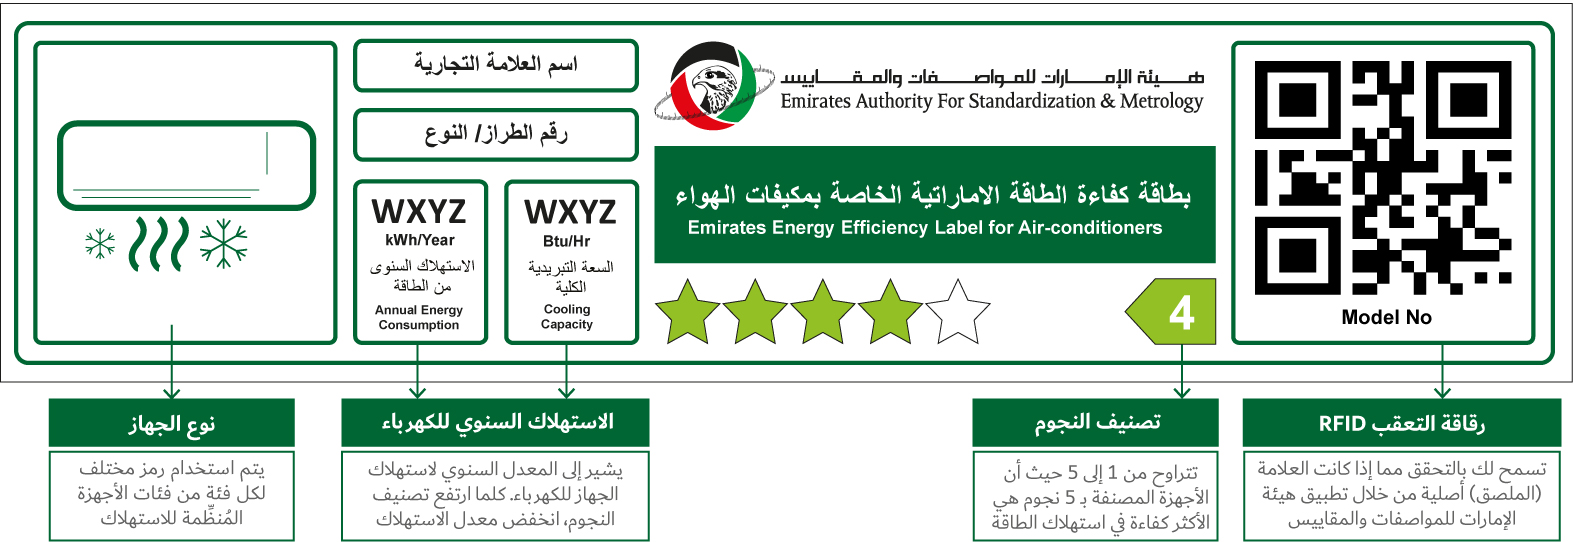 ملصق هيئة الإمارات للمواصفات والمقاييس